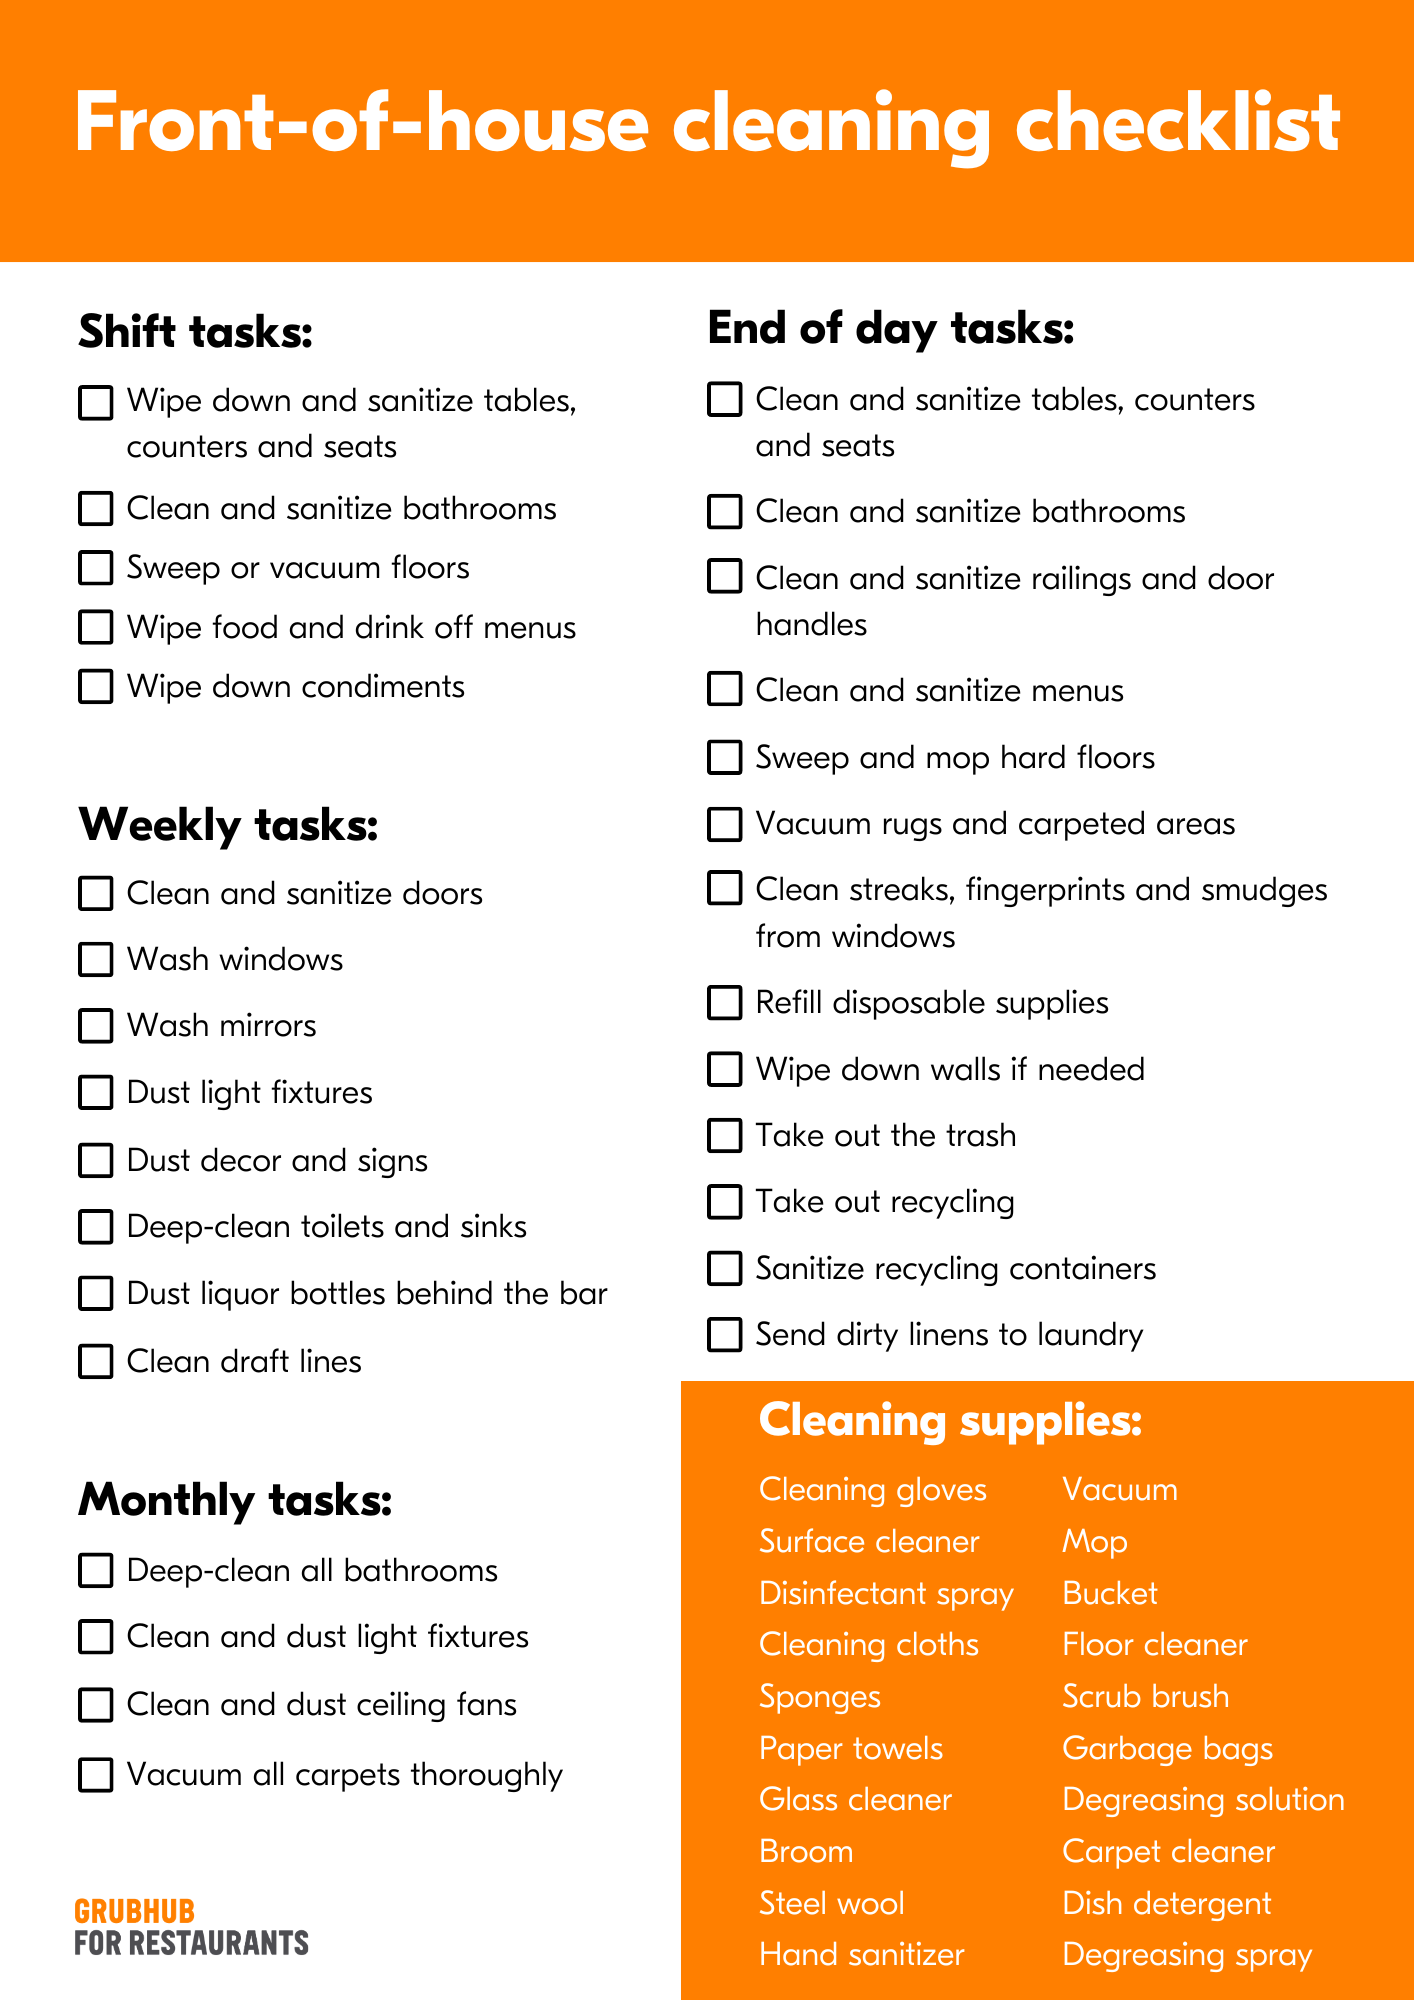 A 5-star restaurant kitchen cleaning checklist | Grubhub